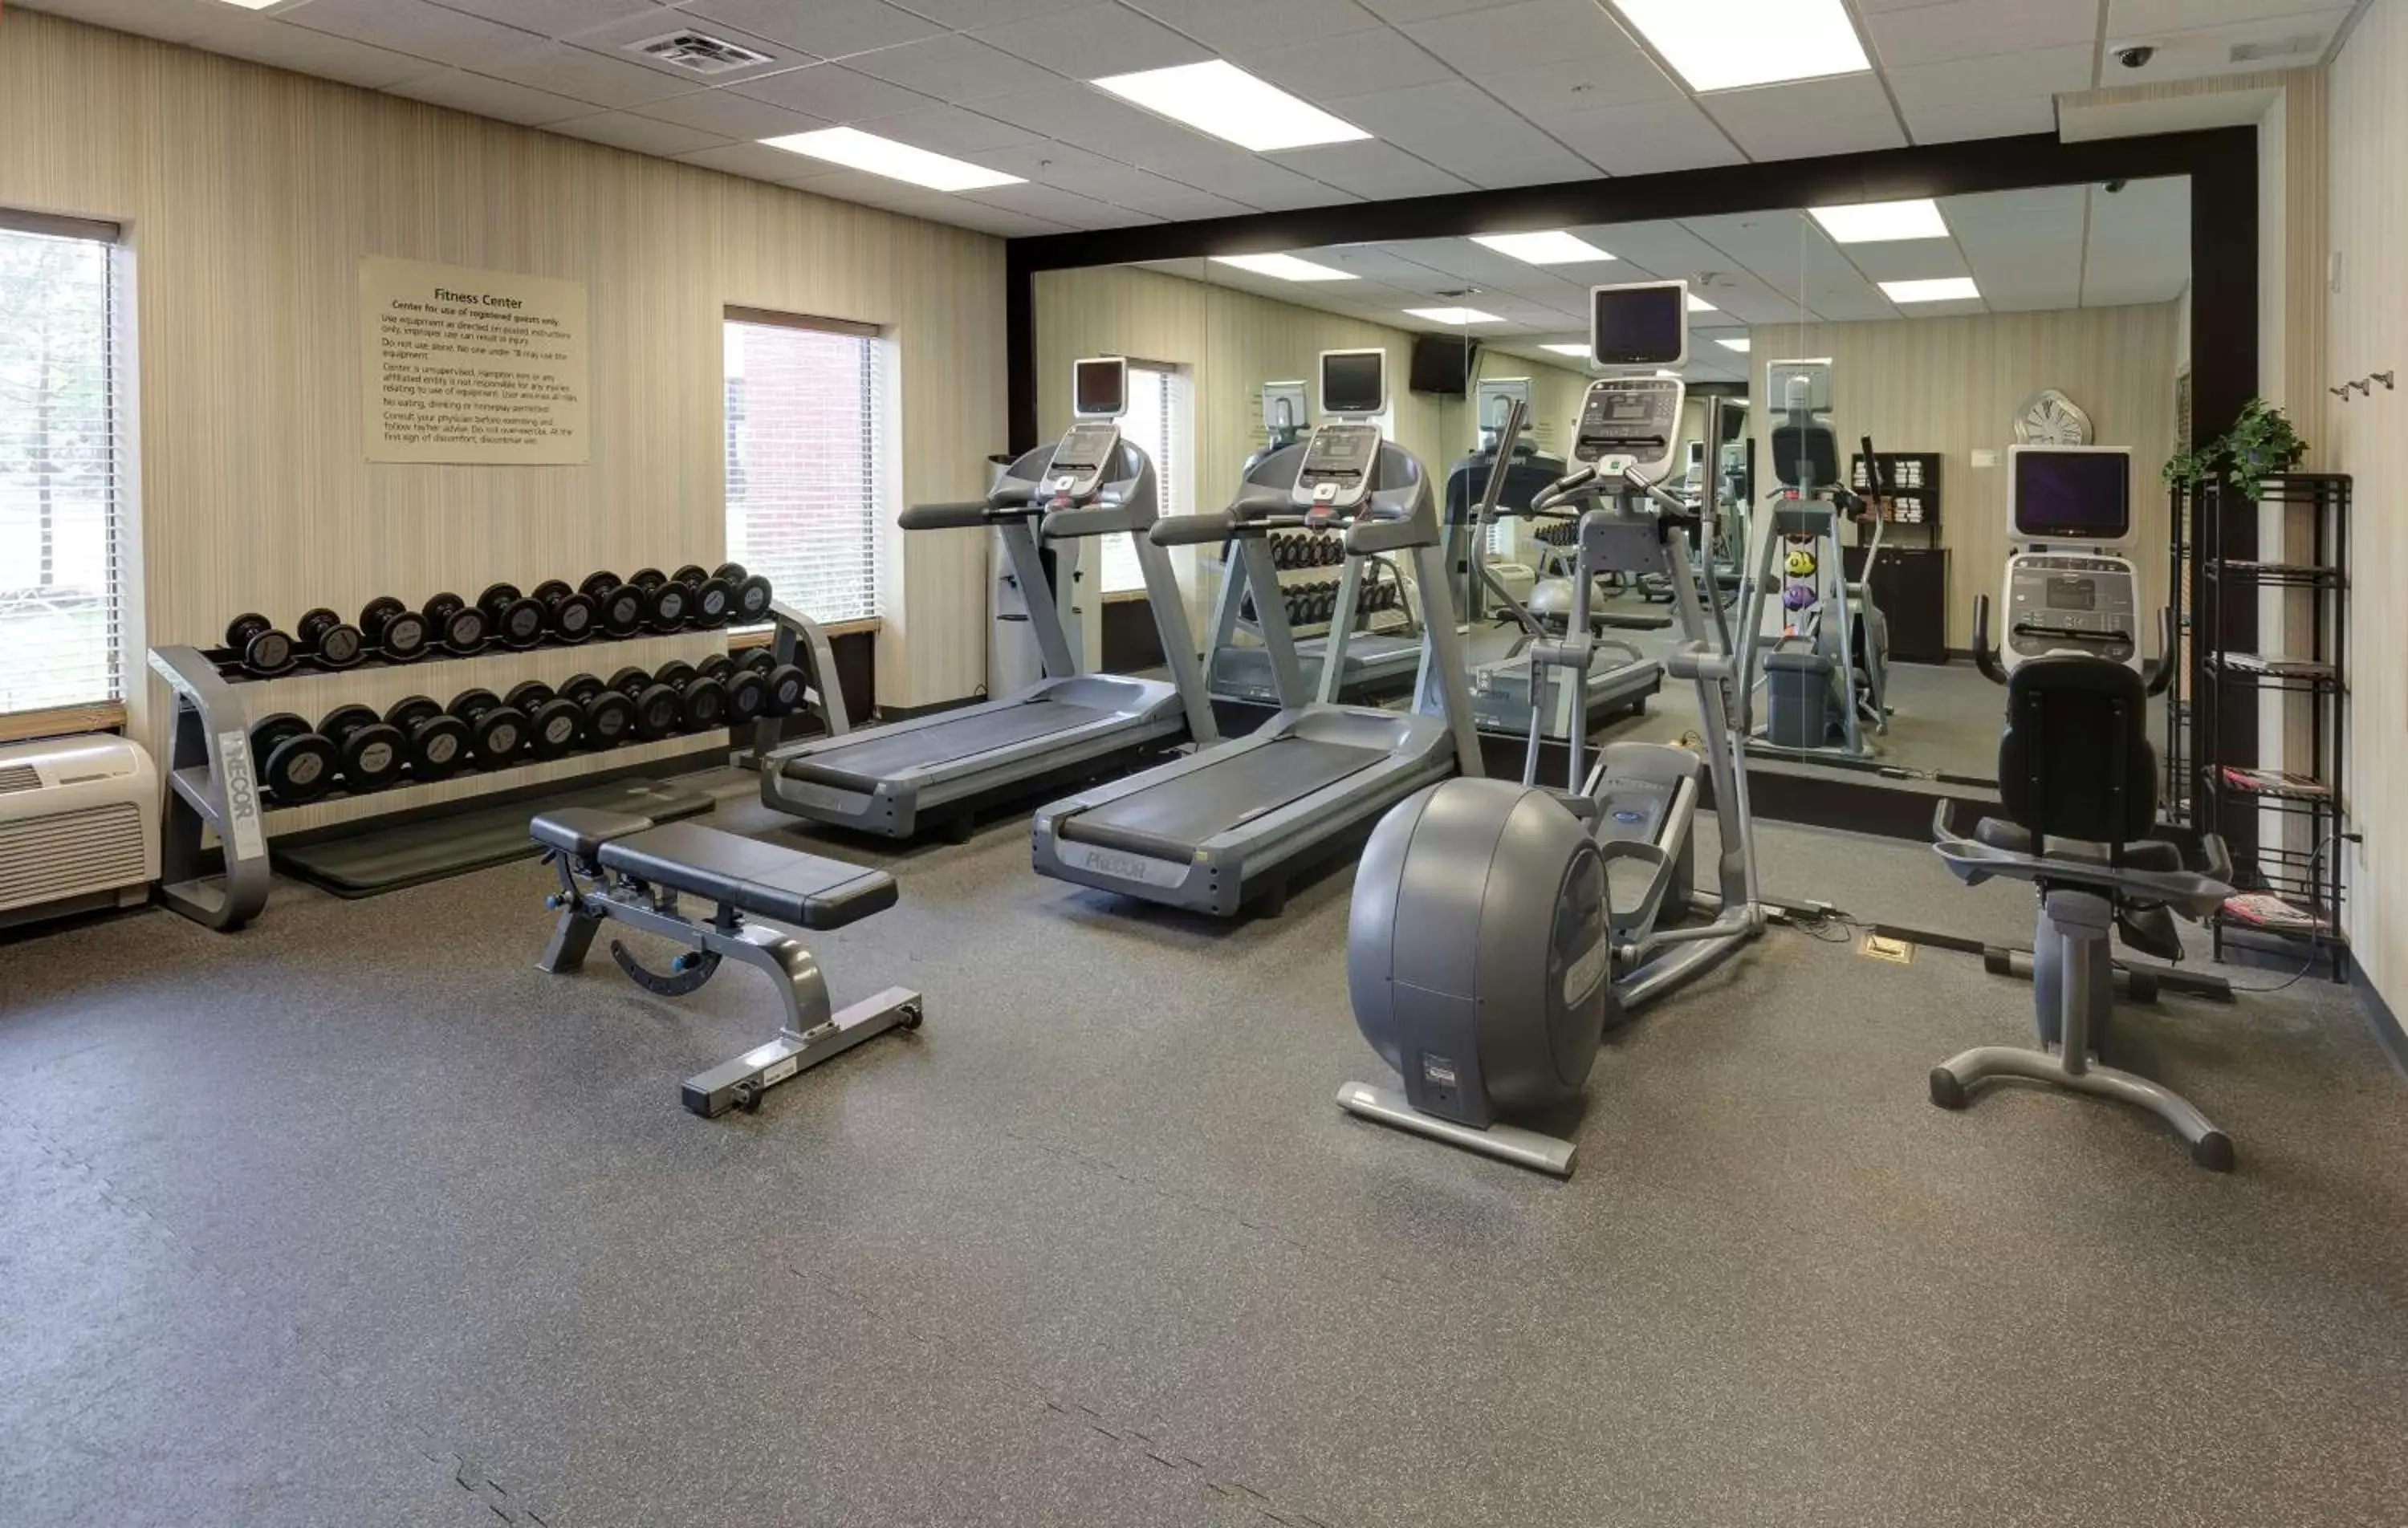 Fitness centre/facilities, Fitness Center/Facilities in Hampton Inn & Suites Columbus Polaris